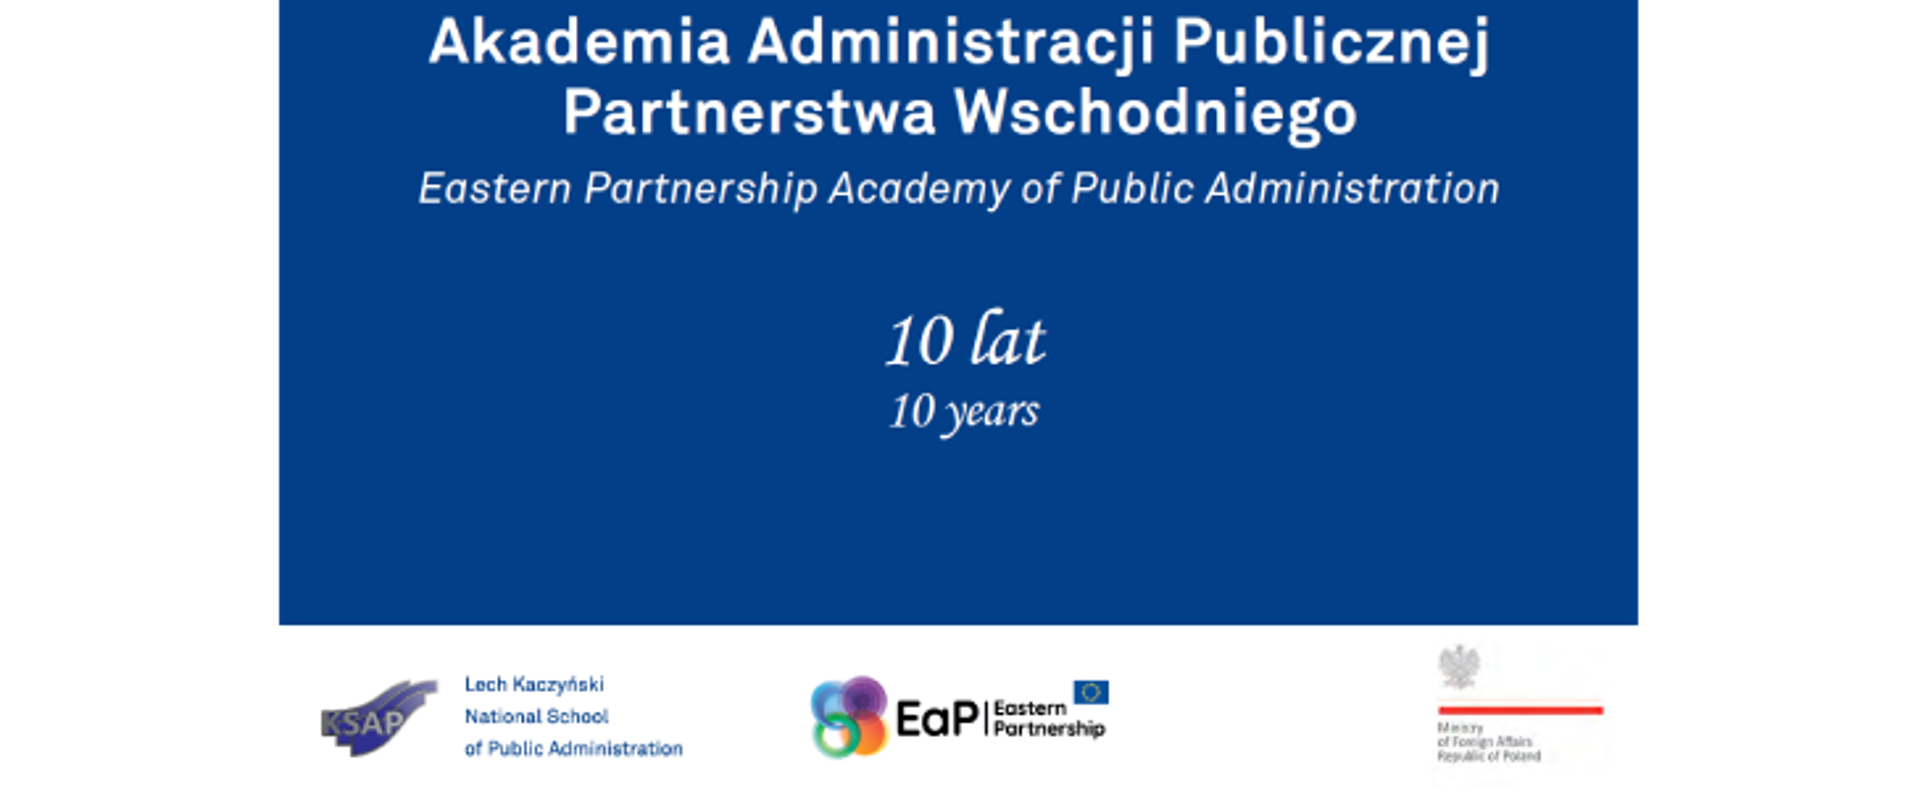 Akademia Administracji Publicznej Partnerstwa Wschodniego - 10 lat - slajd tytułowy projektu - niebieskie napisy na błękitnym tle